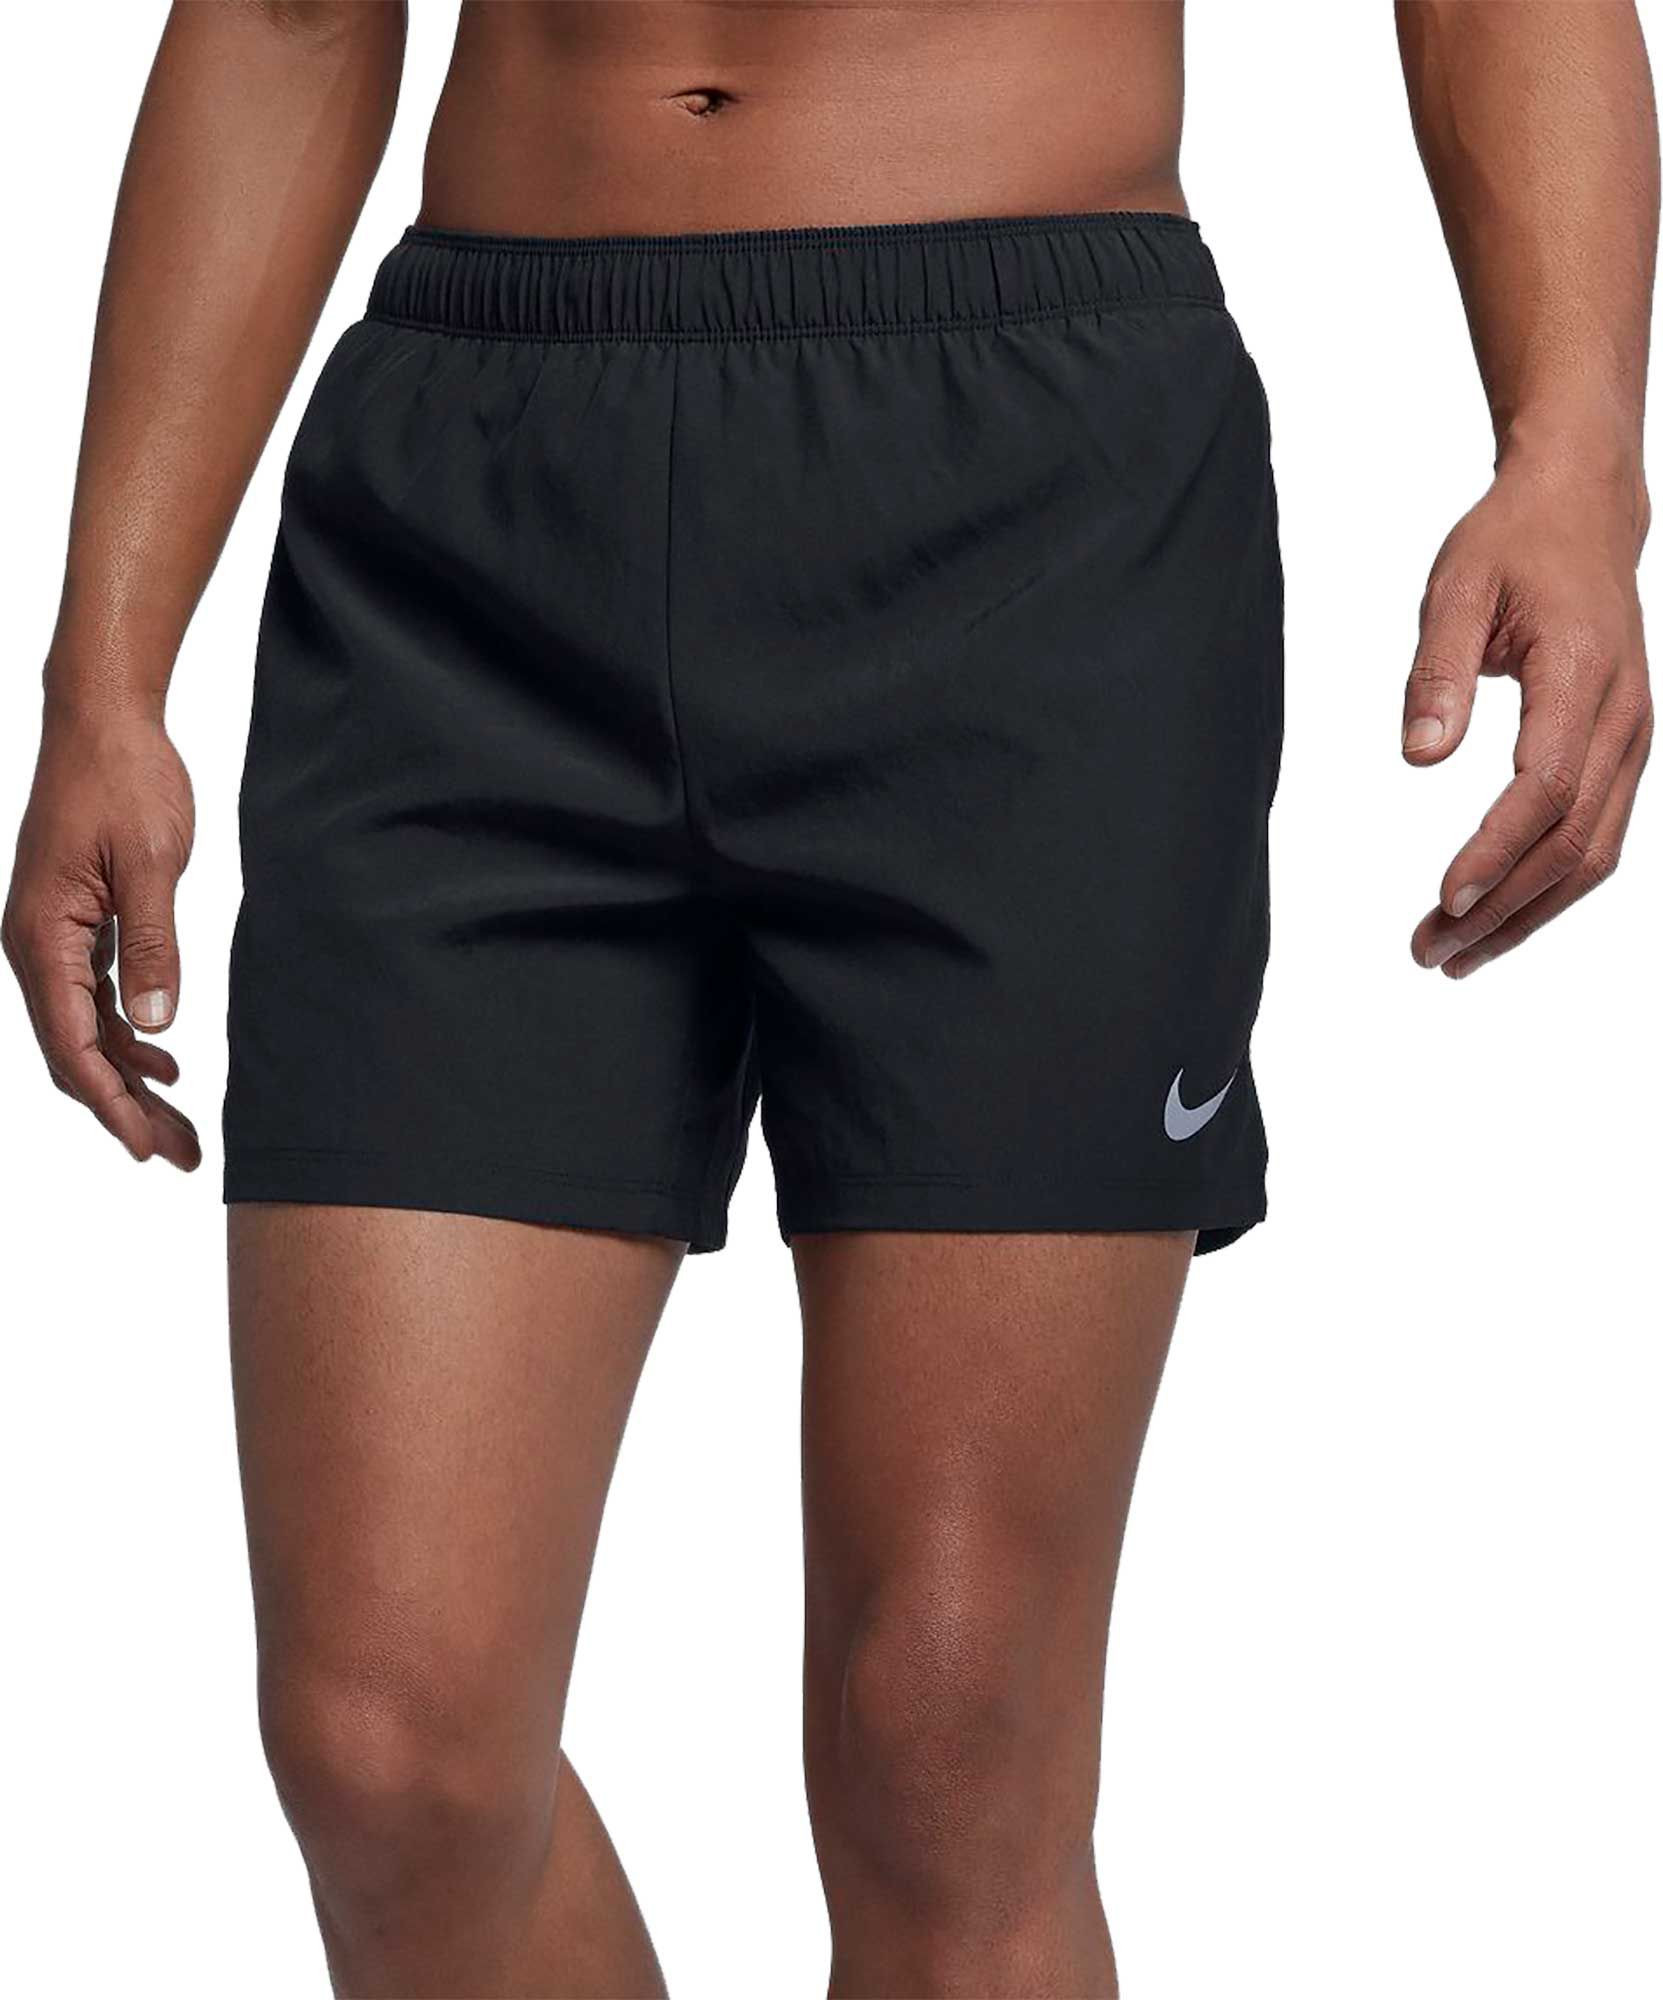 nike running shorts dicks